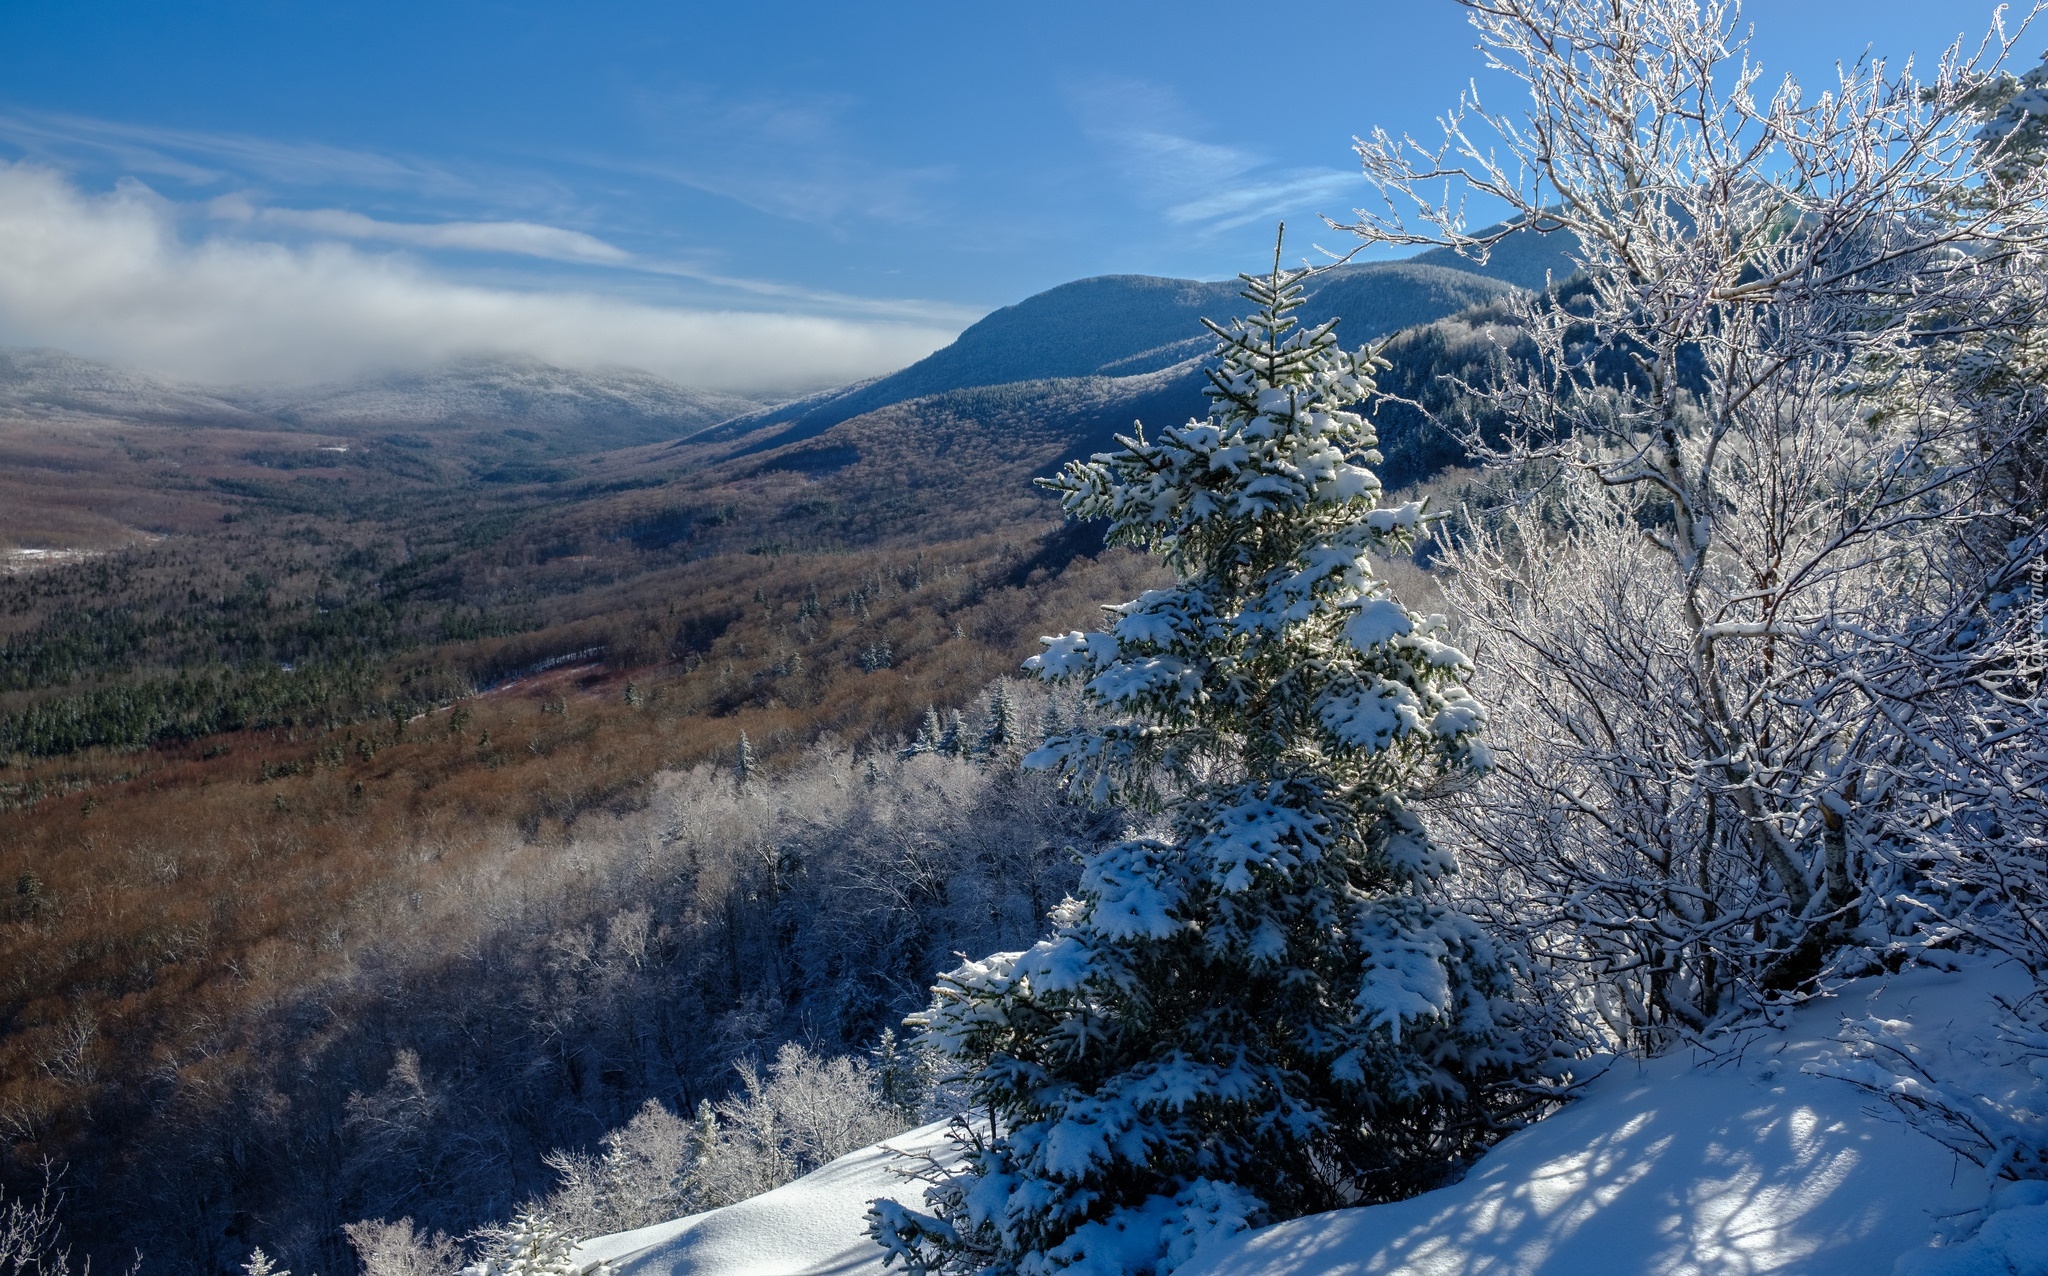 Stany Zjednoczone, Stan New Hampshire, Góry Appalachy, Góry Białe, Zima, Wzgórza, Drzewa, Śnieg, Niebo